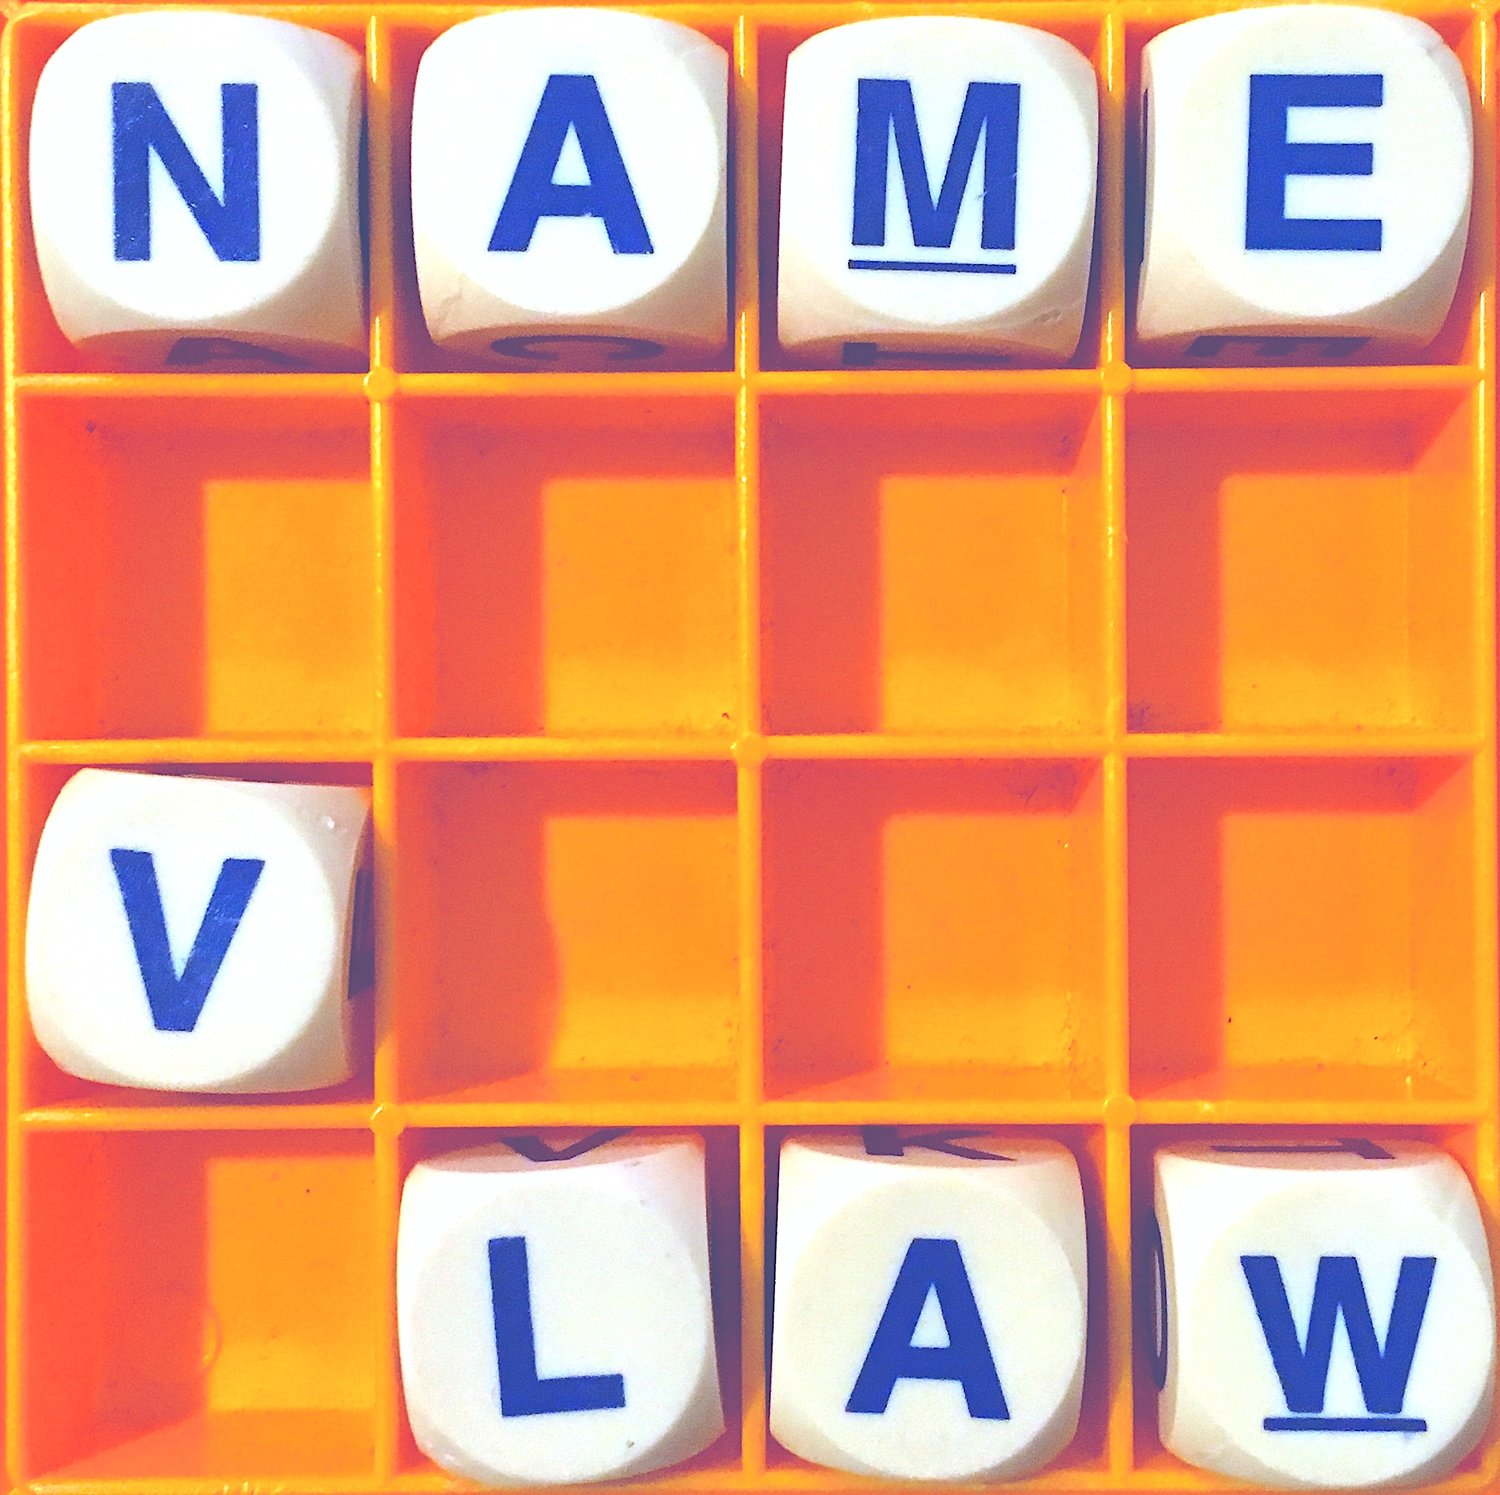 Thumbnail for "87. Name v. Law".